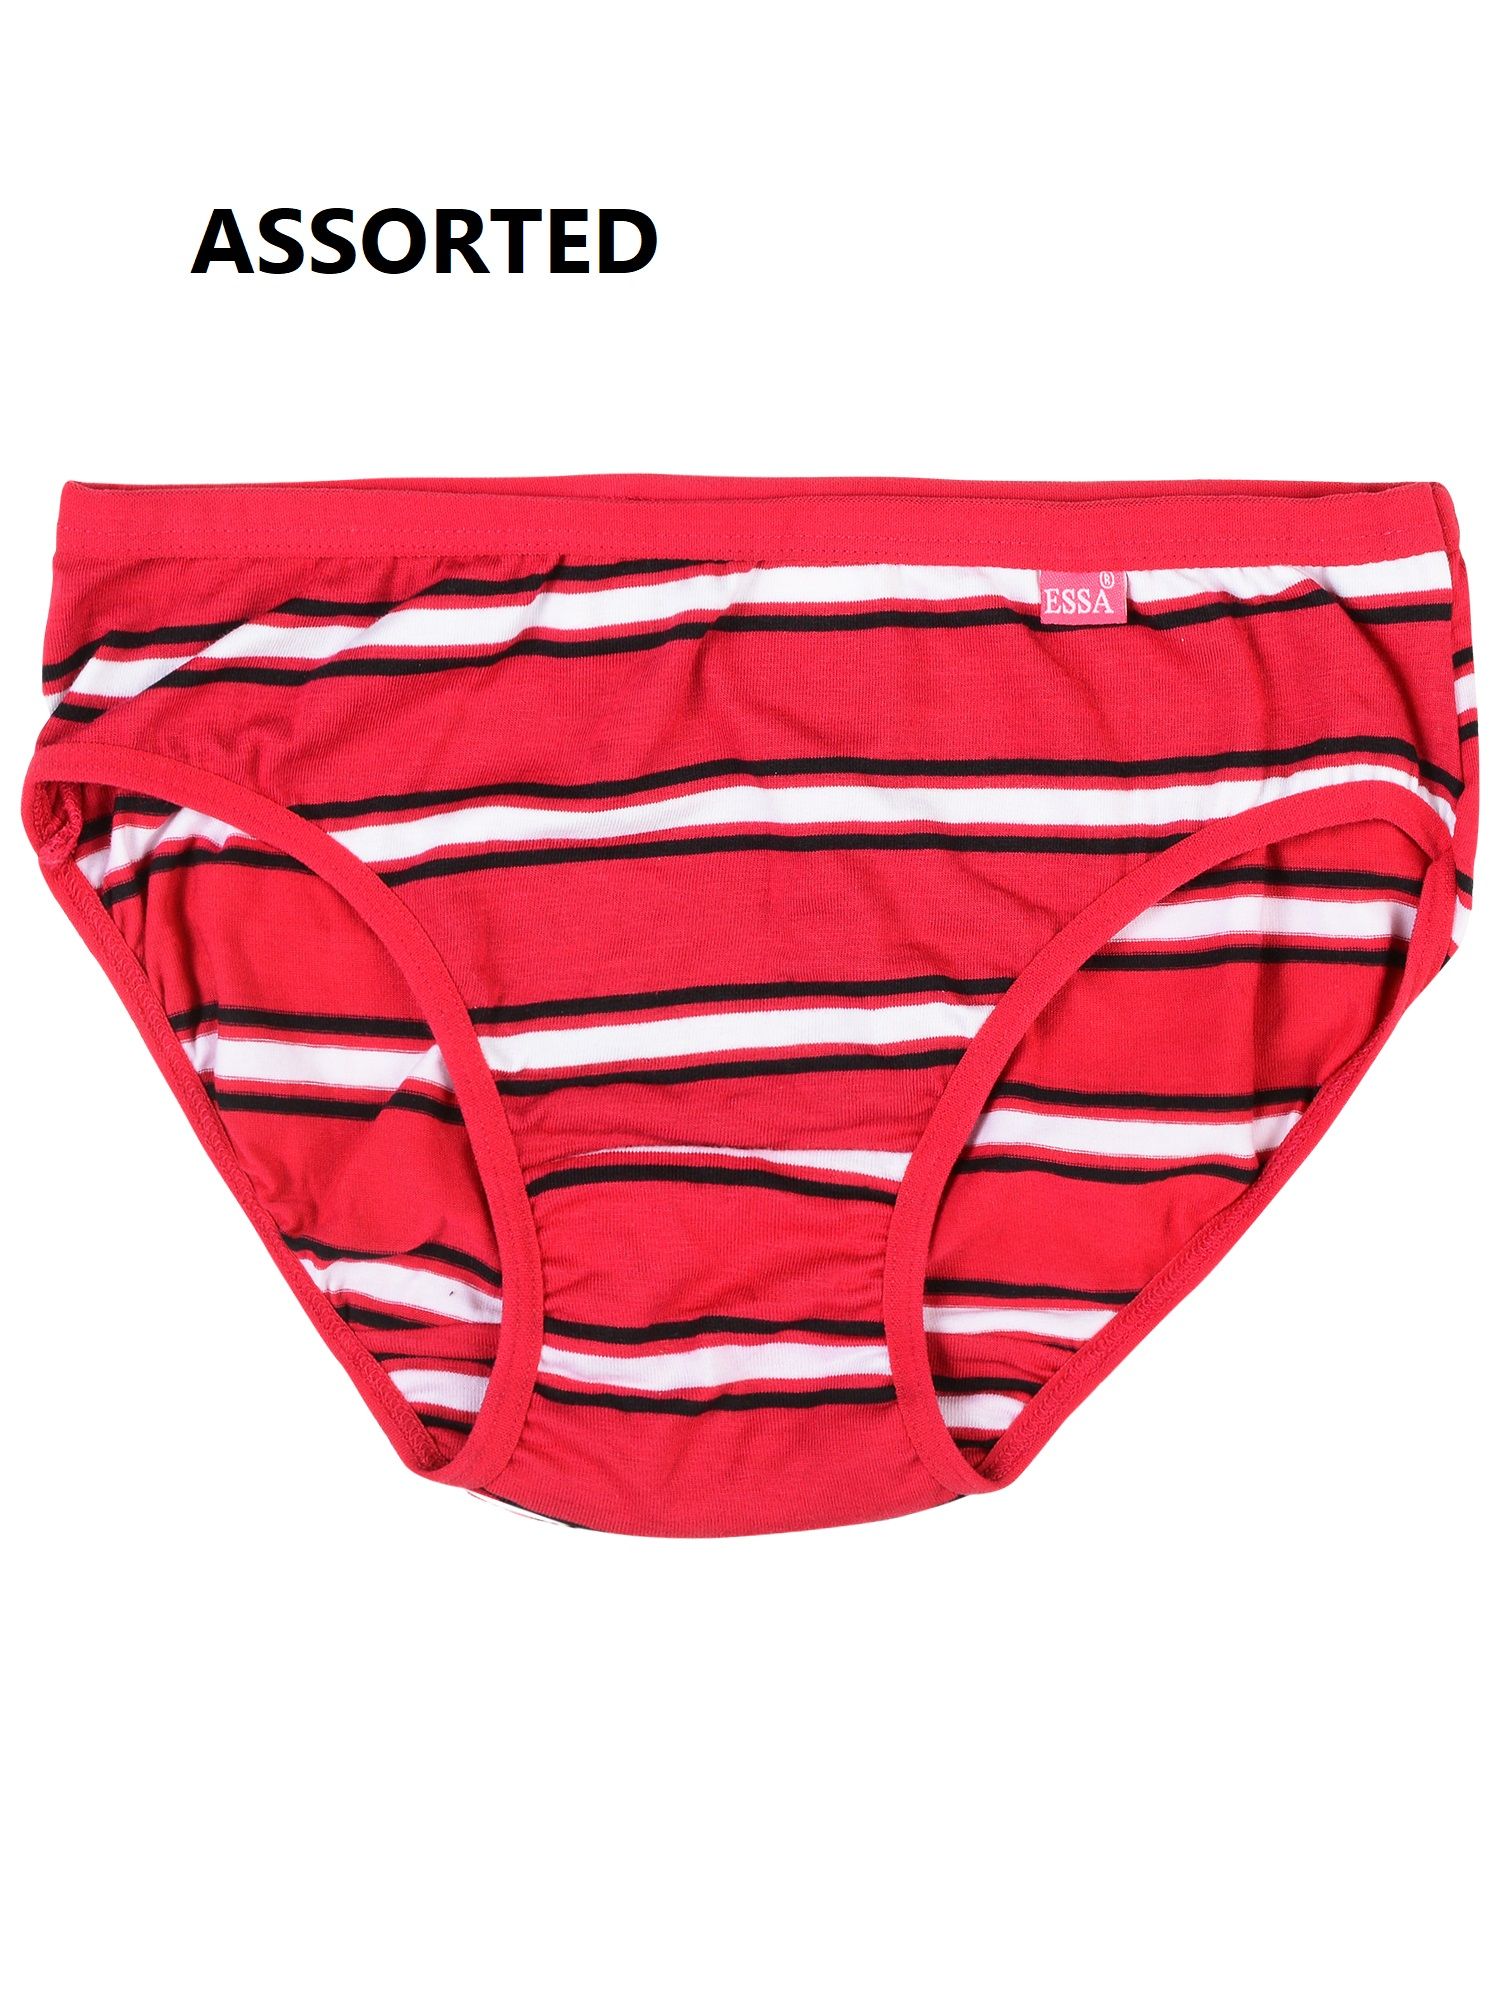 Premium Ladies Striped Panties - pack of 5